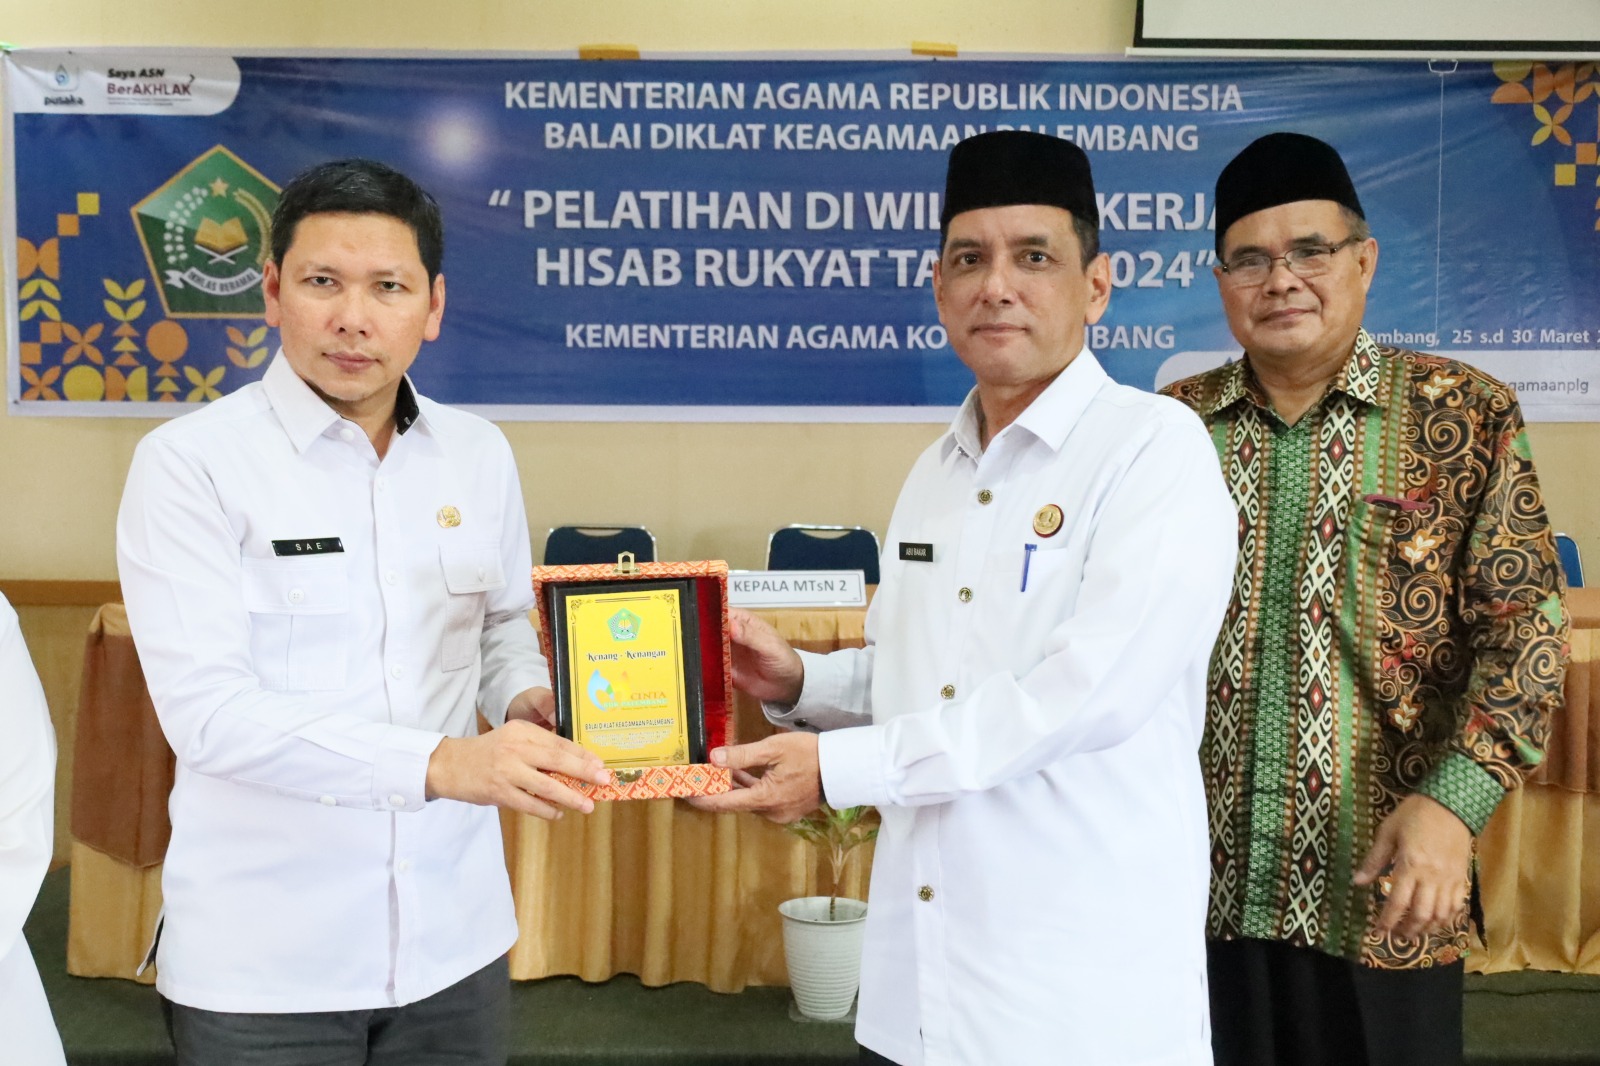 Pelatihan Hisab dan Rukyat di Palembang: Meningkatkan Kompetensi ASN Kementerian Agama